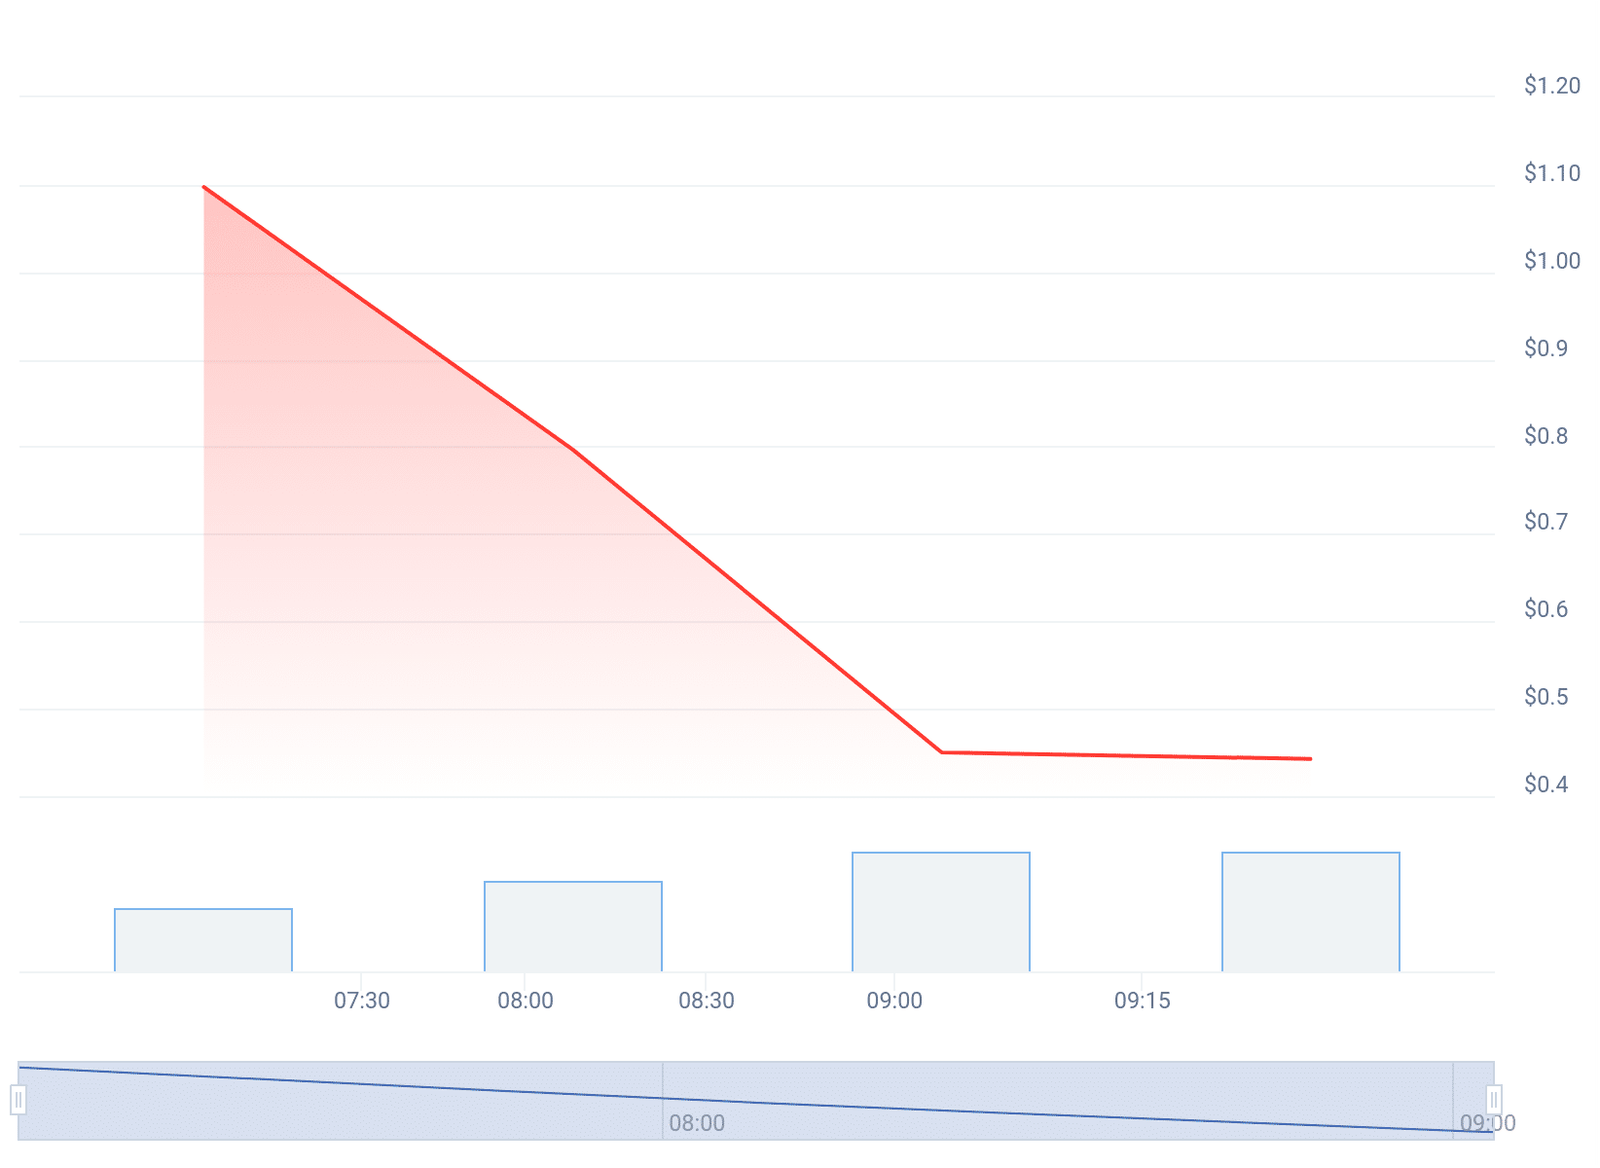 Gráfico de preço da memecoin Slerf - Fonte: CoinGecko